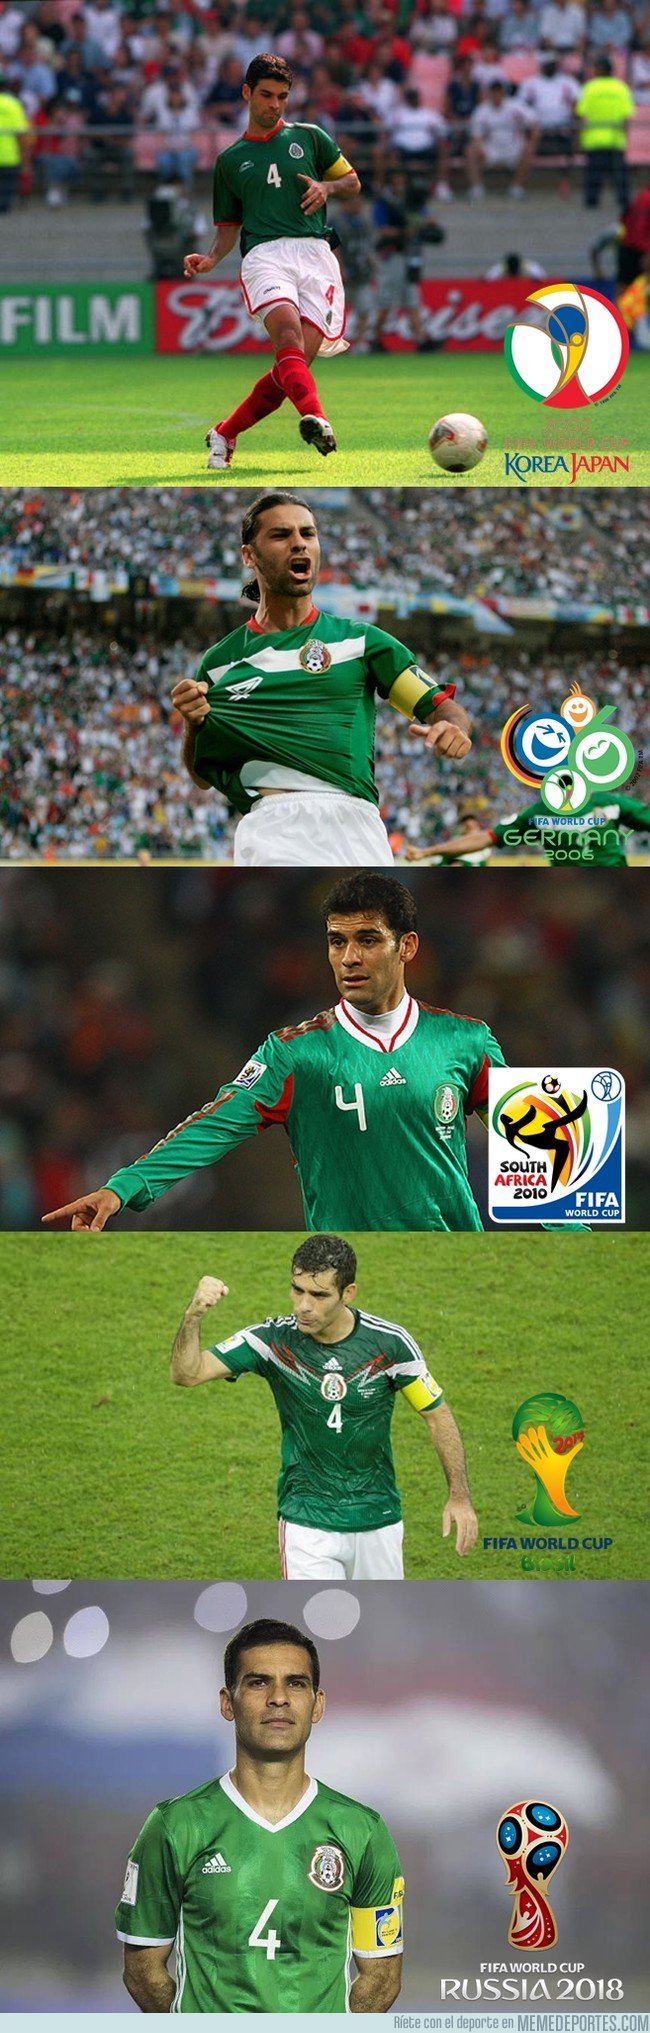 1034796 - Rafa Márquez jugará su quinto Mundial. Más que cualquiera en este siglo